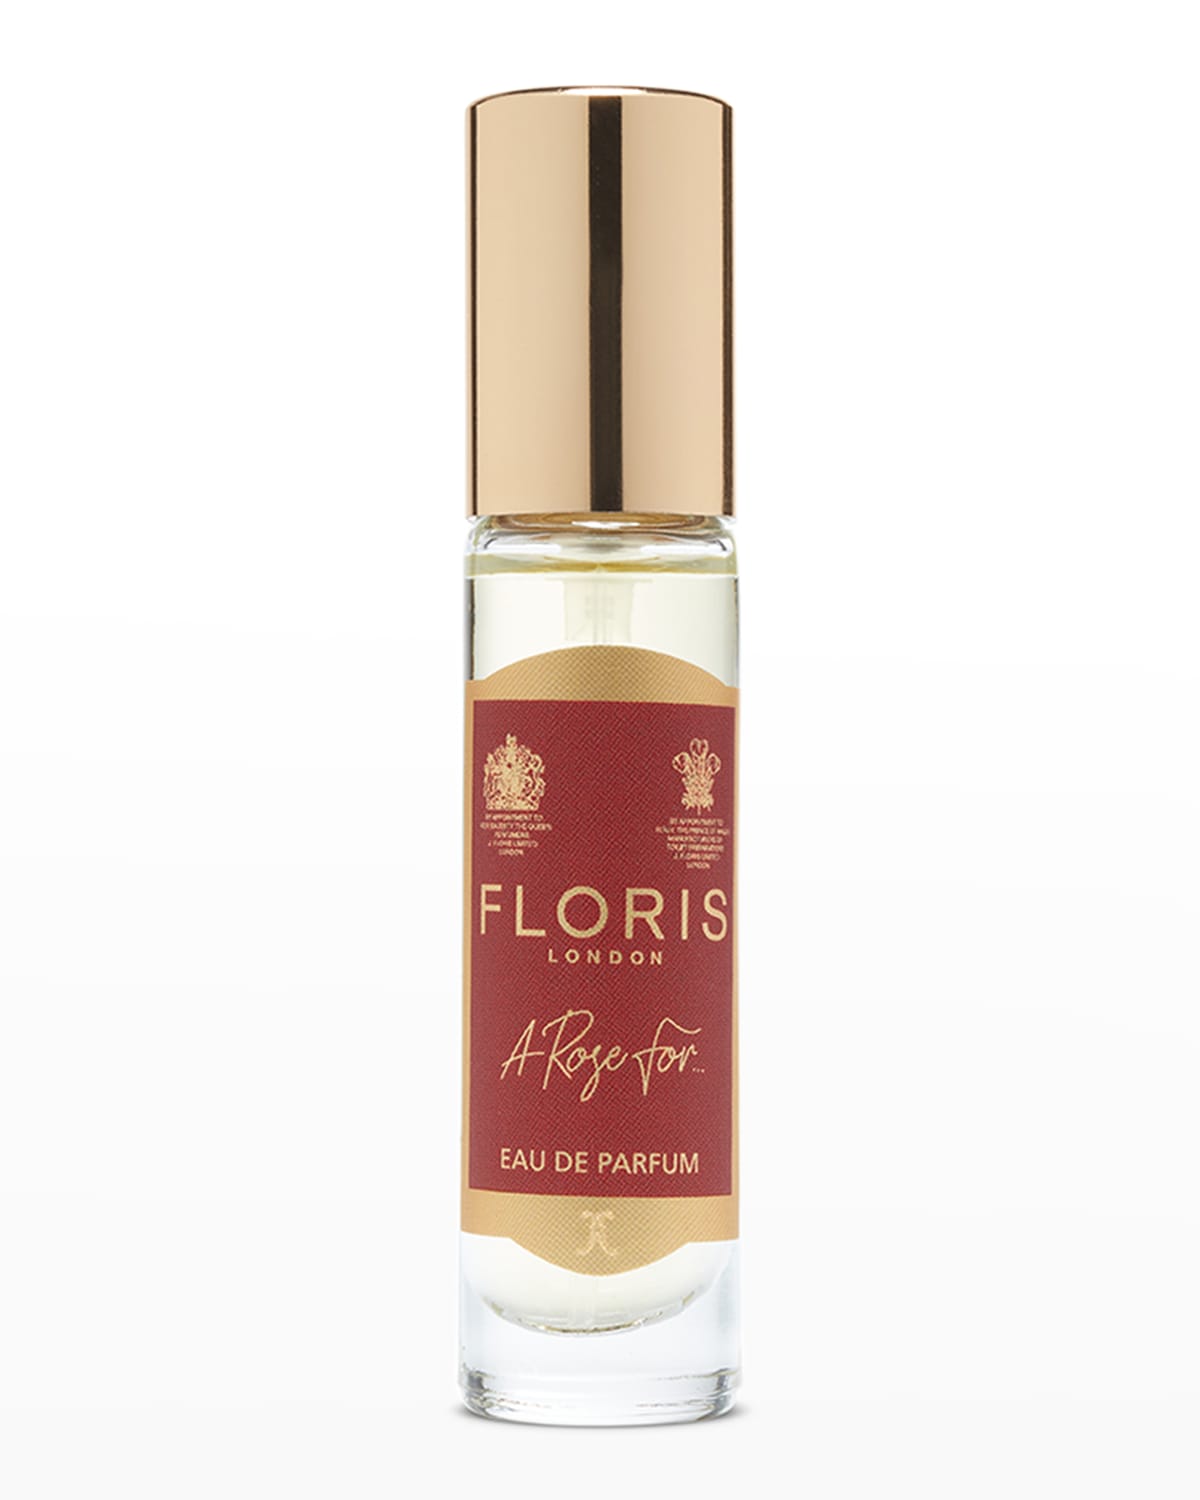 Floris London A Rose For.Eau de Parfum, 0.33 oz.